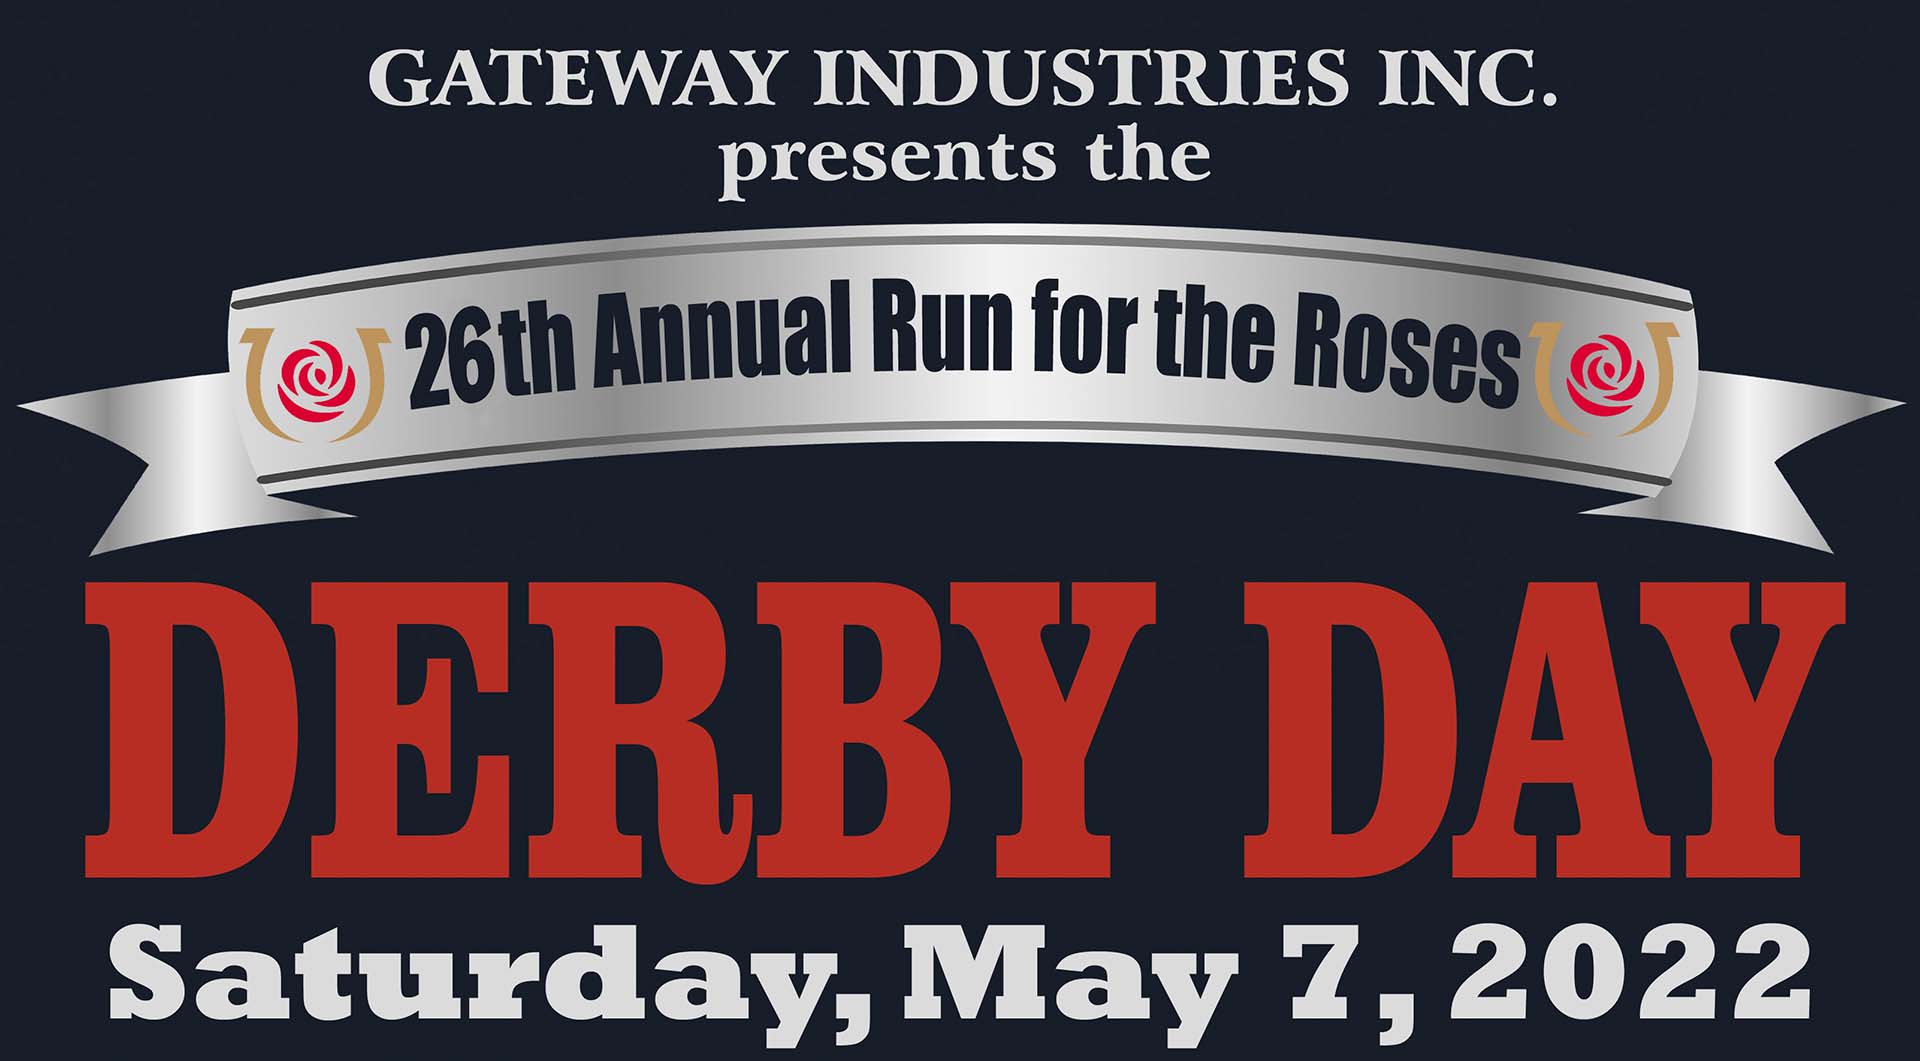 Derby Day 2022 Gateway Industries